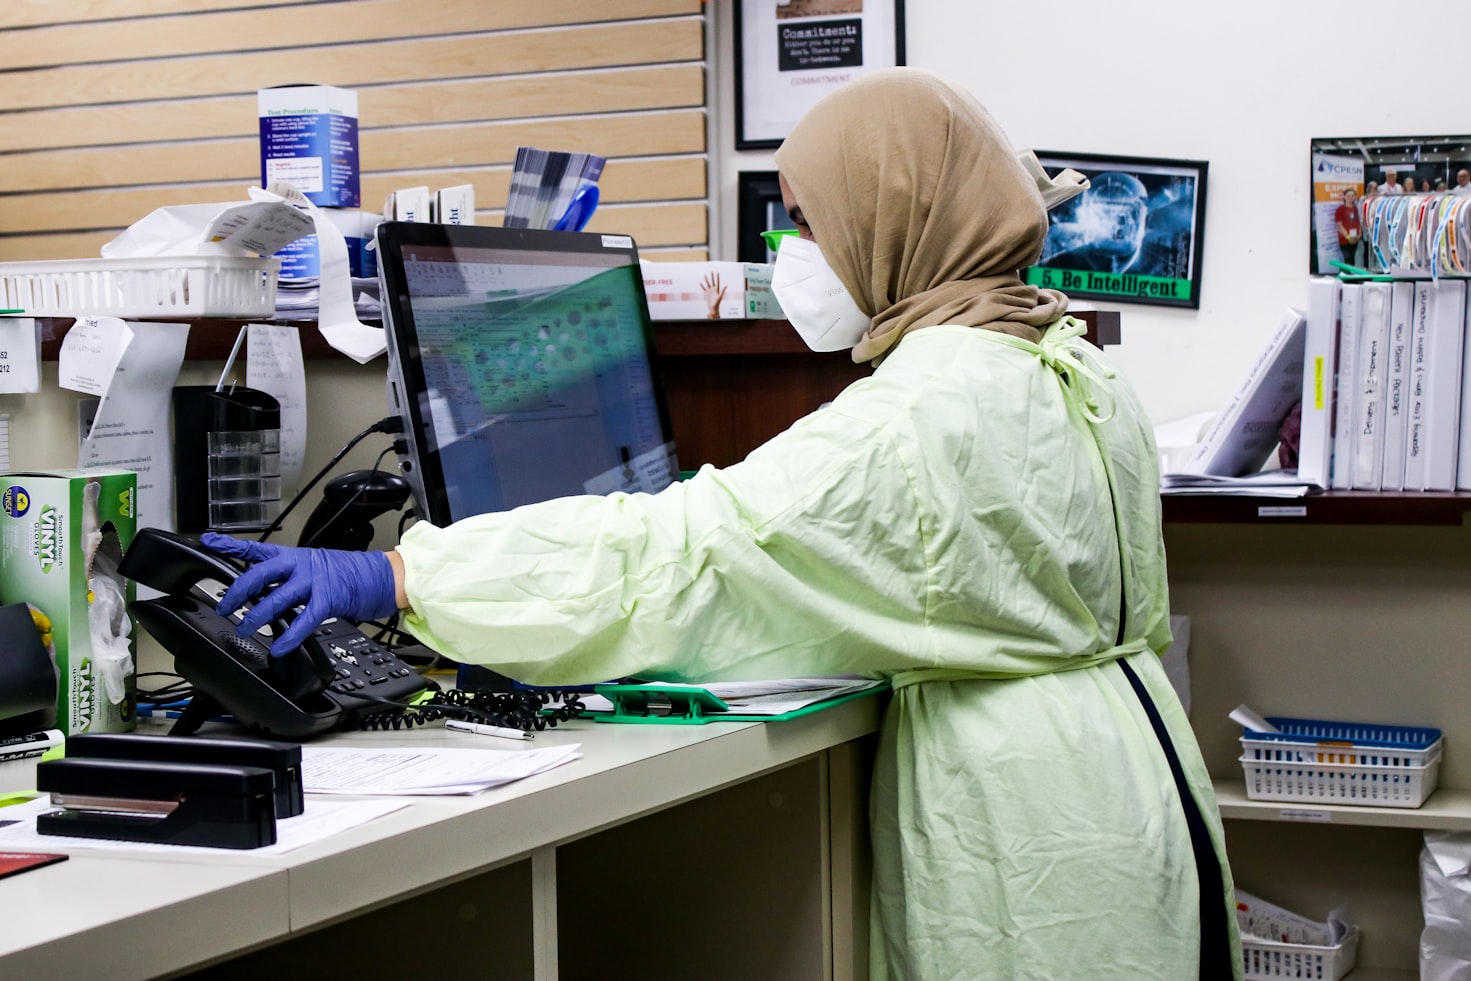 Hijab wearing nurse behind counter